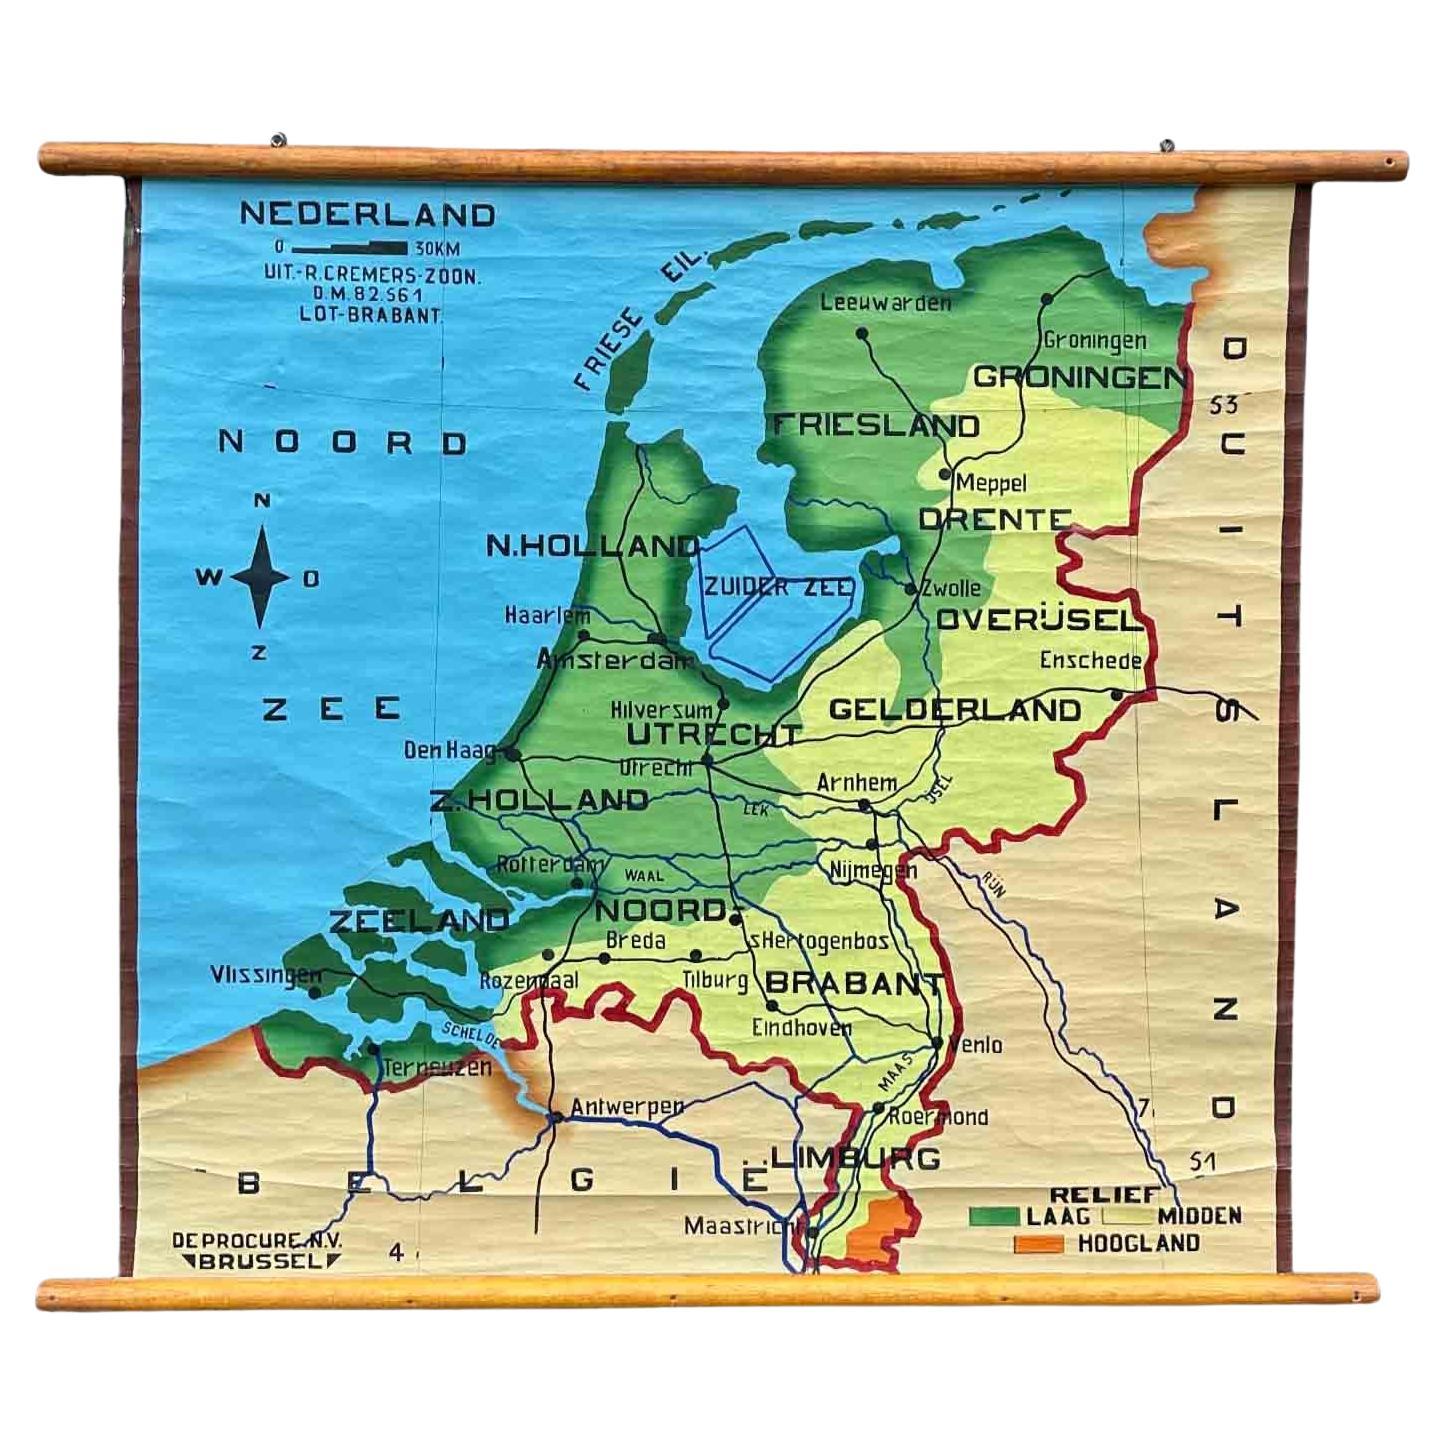 Tableau scolaire ou carte à rabat de la géographie des Pays-Bas, années 1950